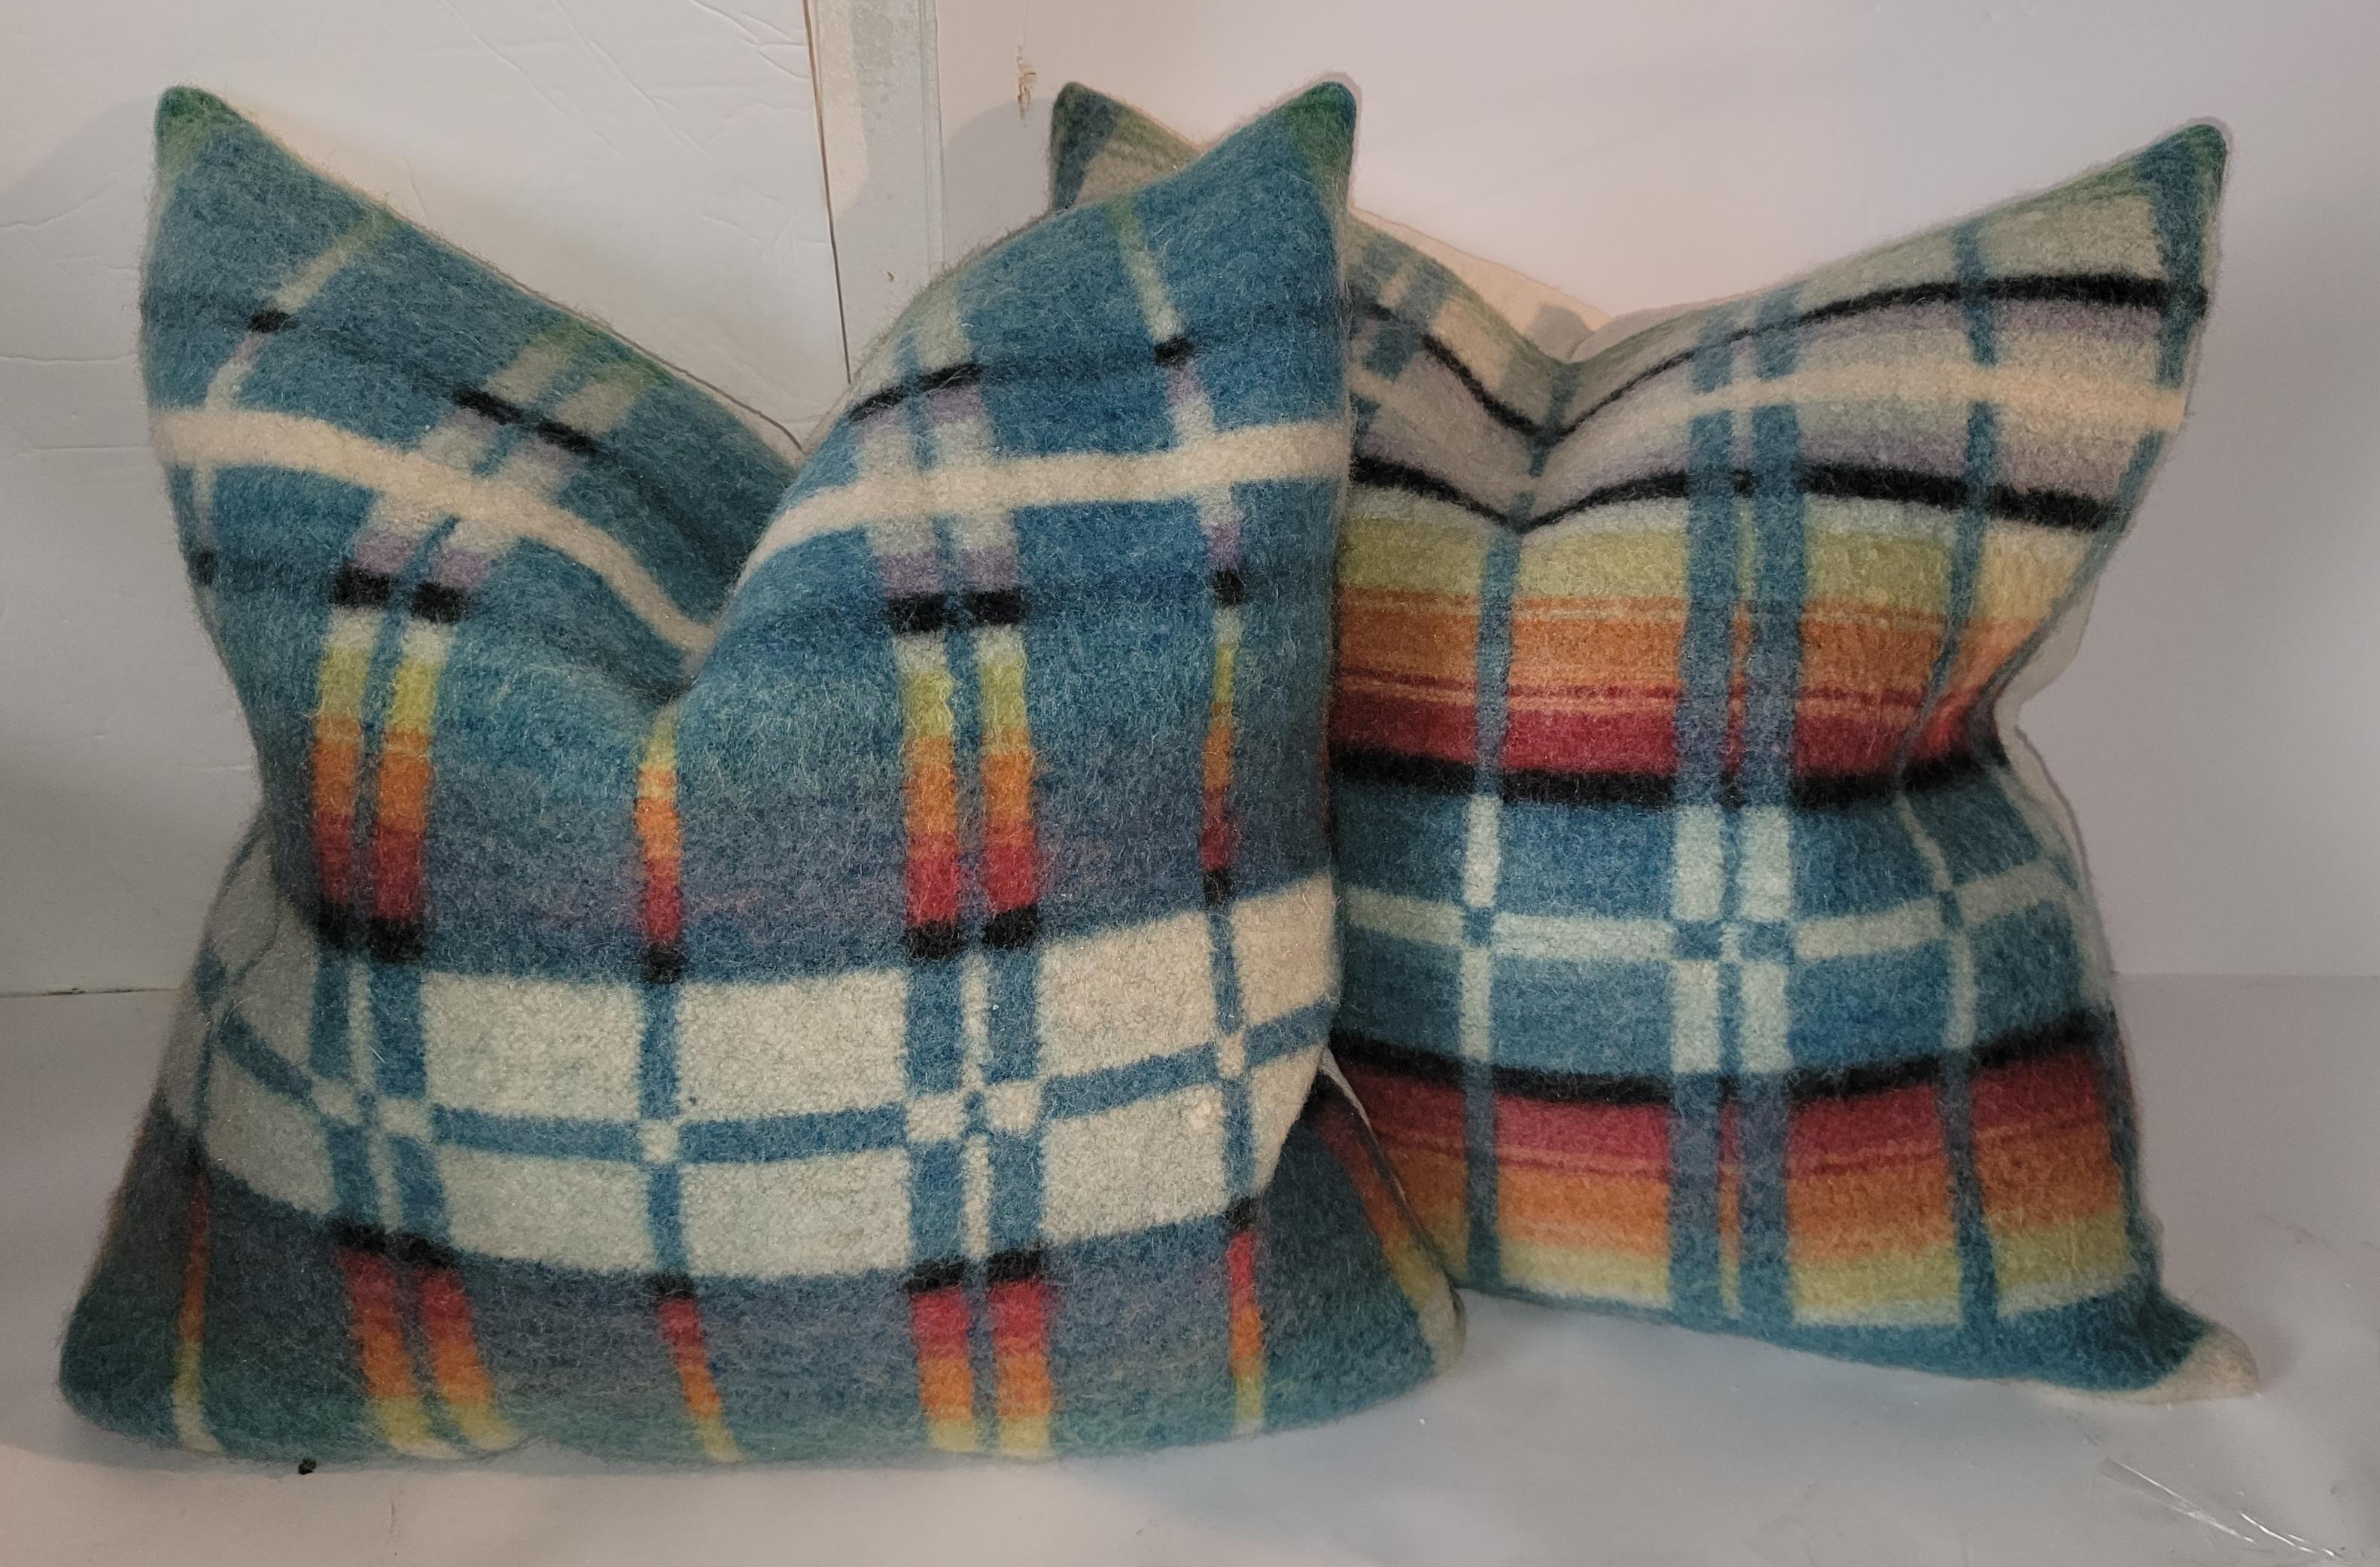 Paires de coussins en laine des années 1940-1950 avec des palettes de couleurs vibrantes. 
Ces deux paires d'oreillers ont été fabriquées à partir de vieilles couvertures de cheval et lavées professionnellement avant d'être confectionnées. 
Les